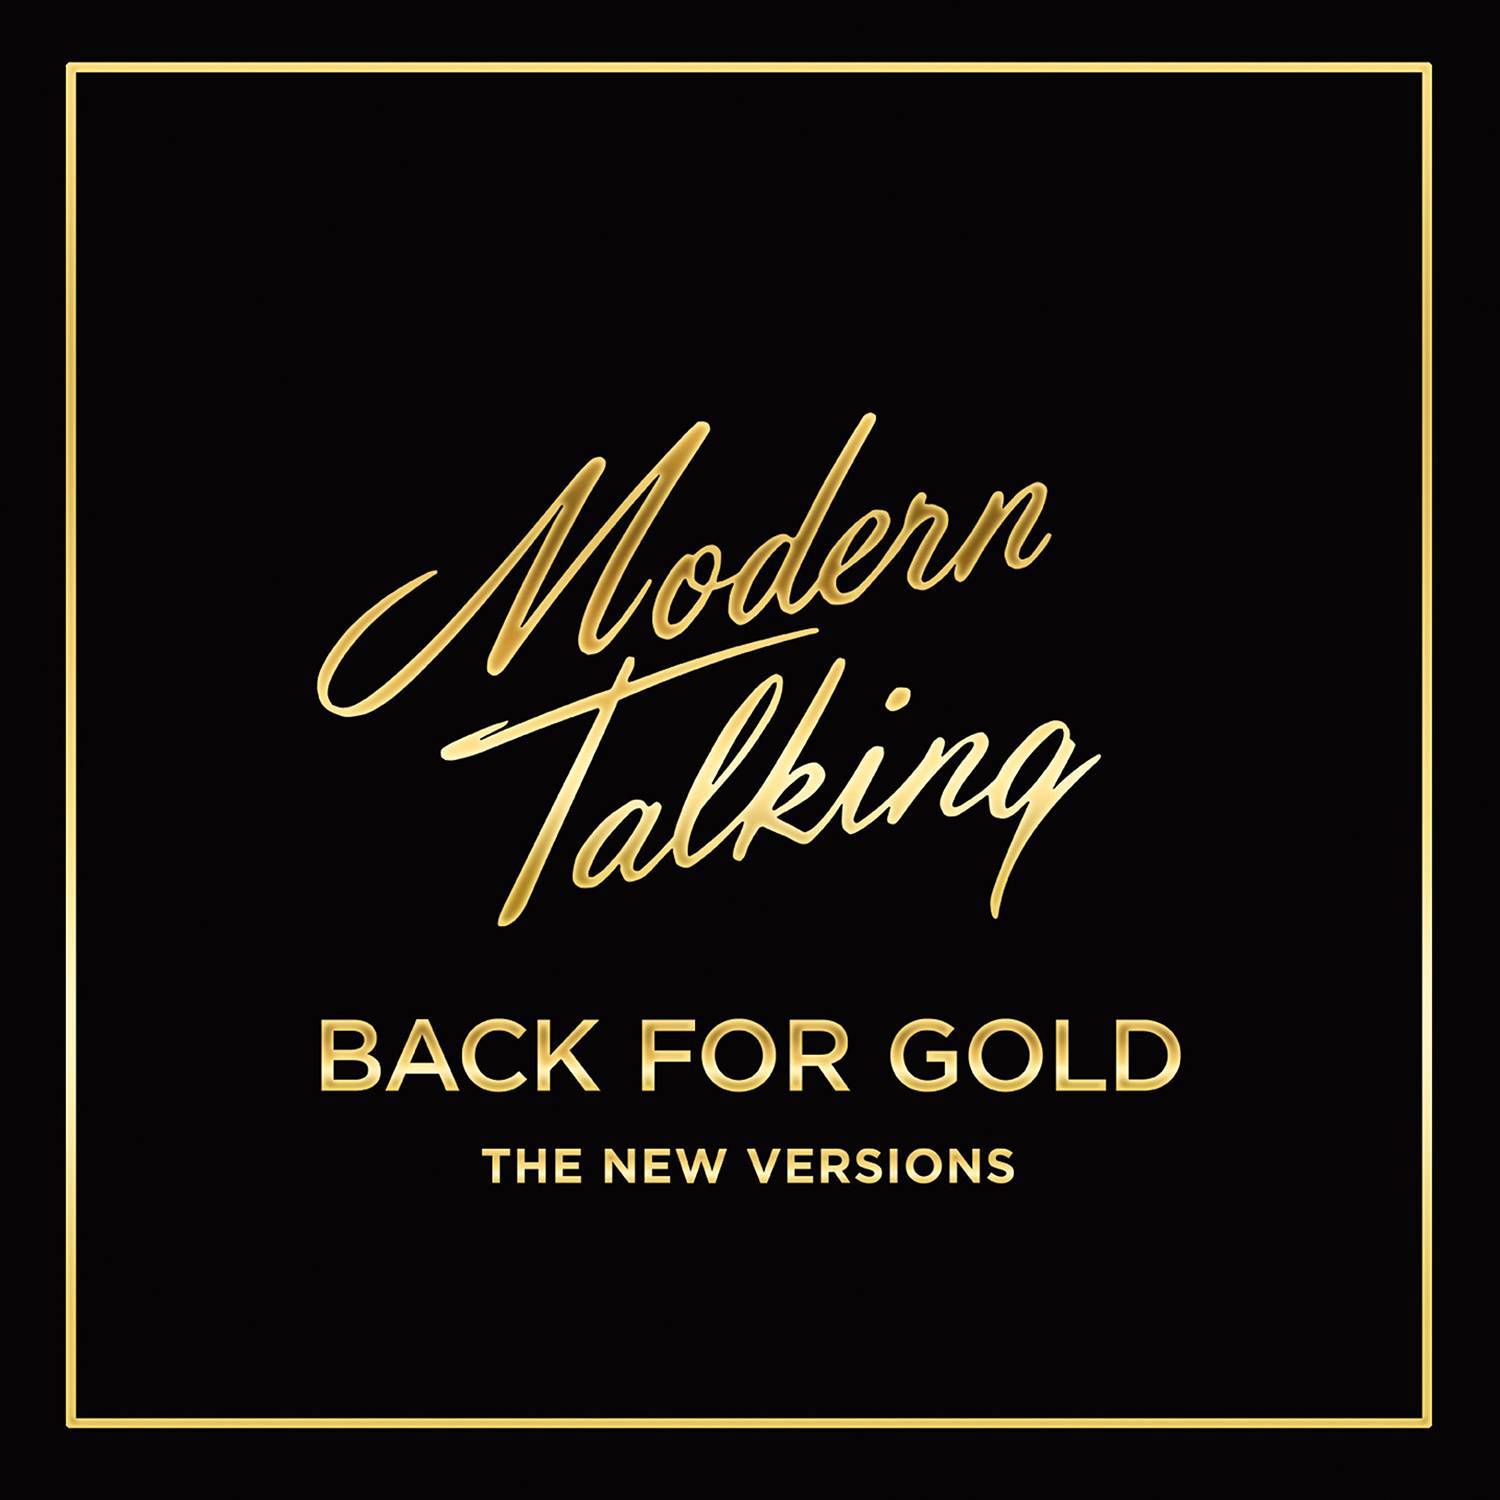 Modern Talking Pop Titan Megamix 2k17 (Chorus Short Mix)